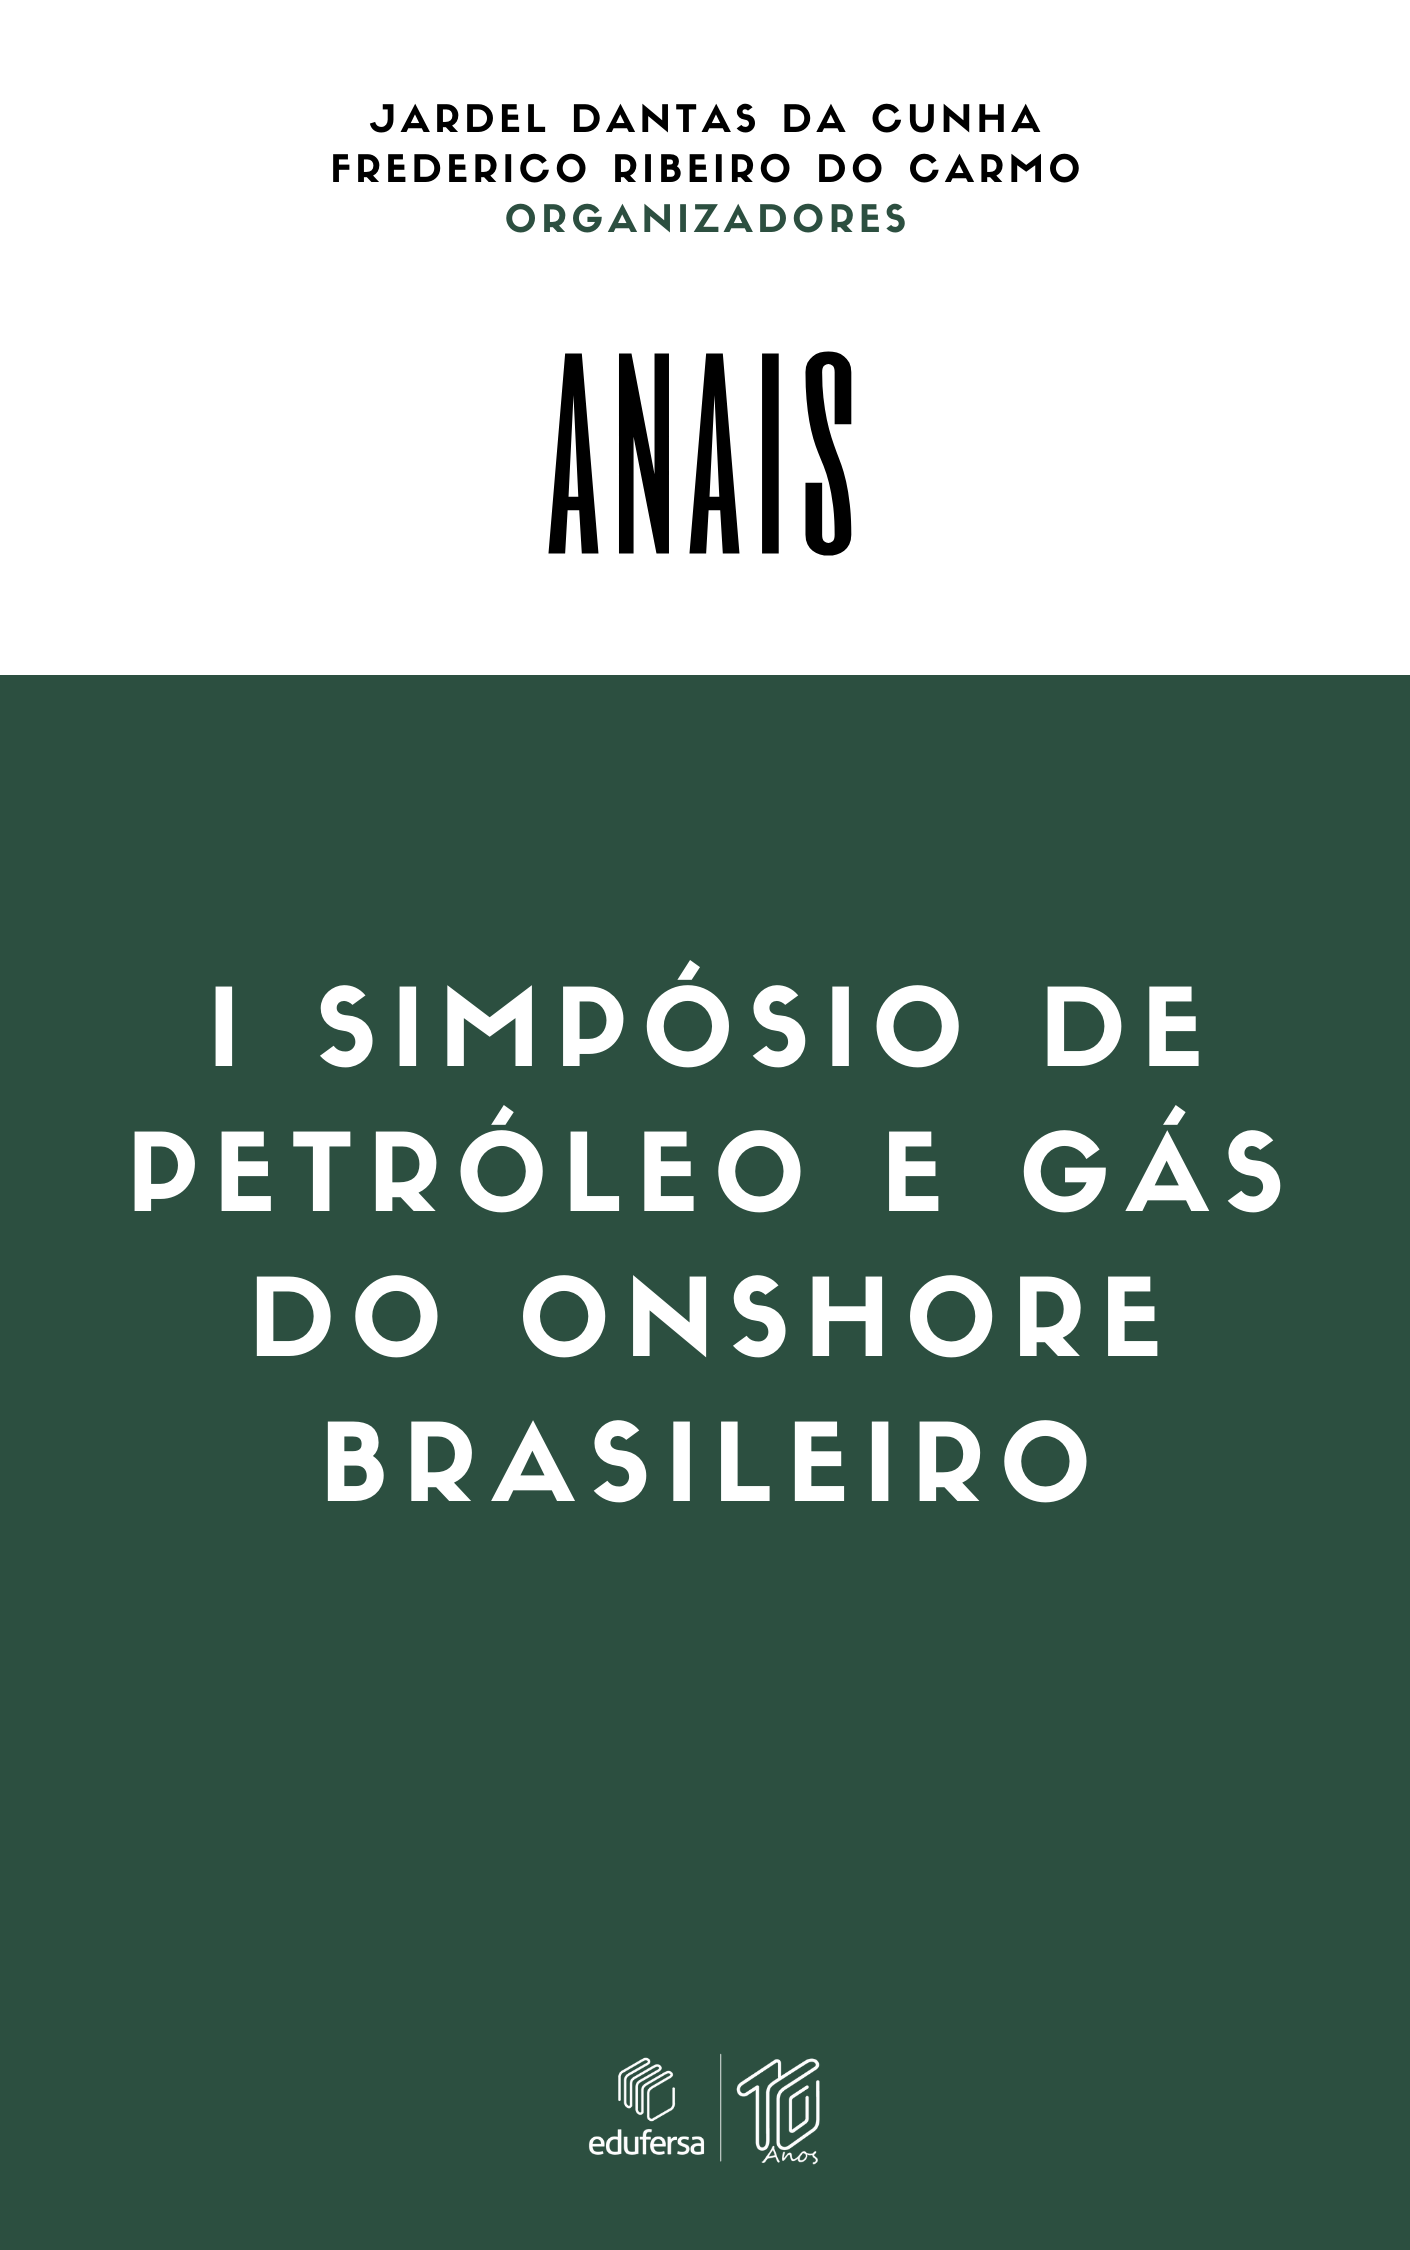 					View 2021: I Simpósio de Petróleo e Gás do Onshore Brasileiro
				